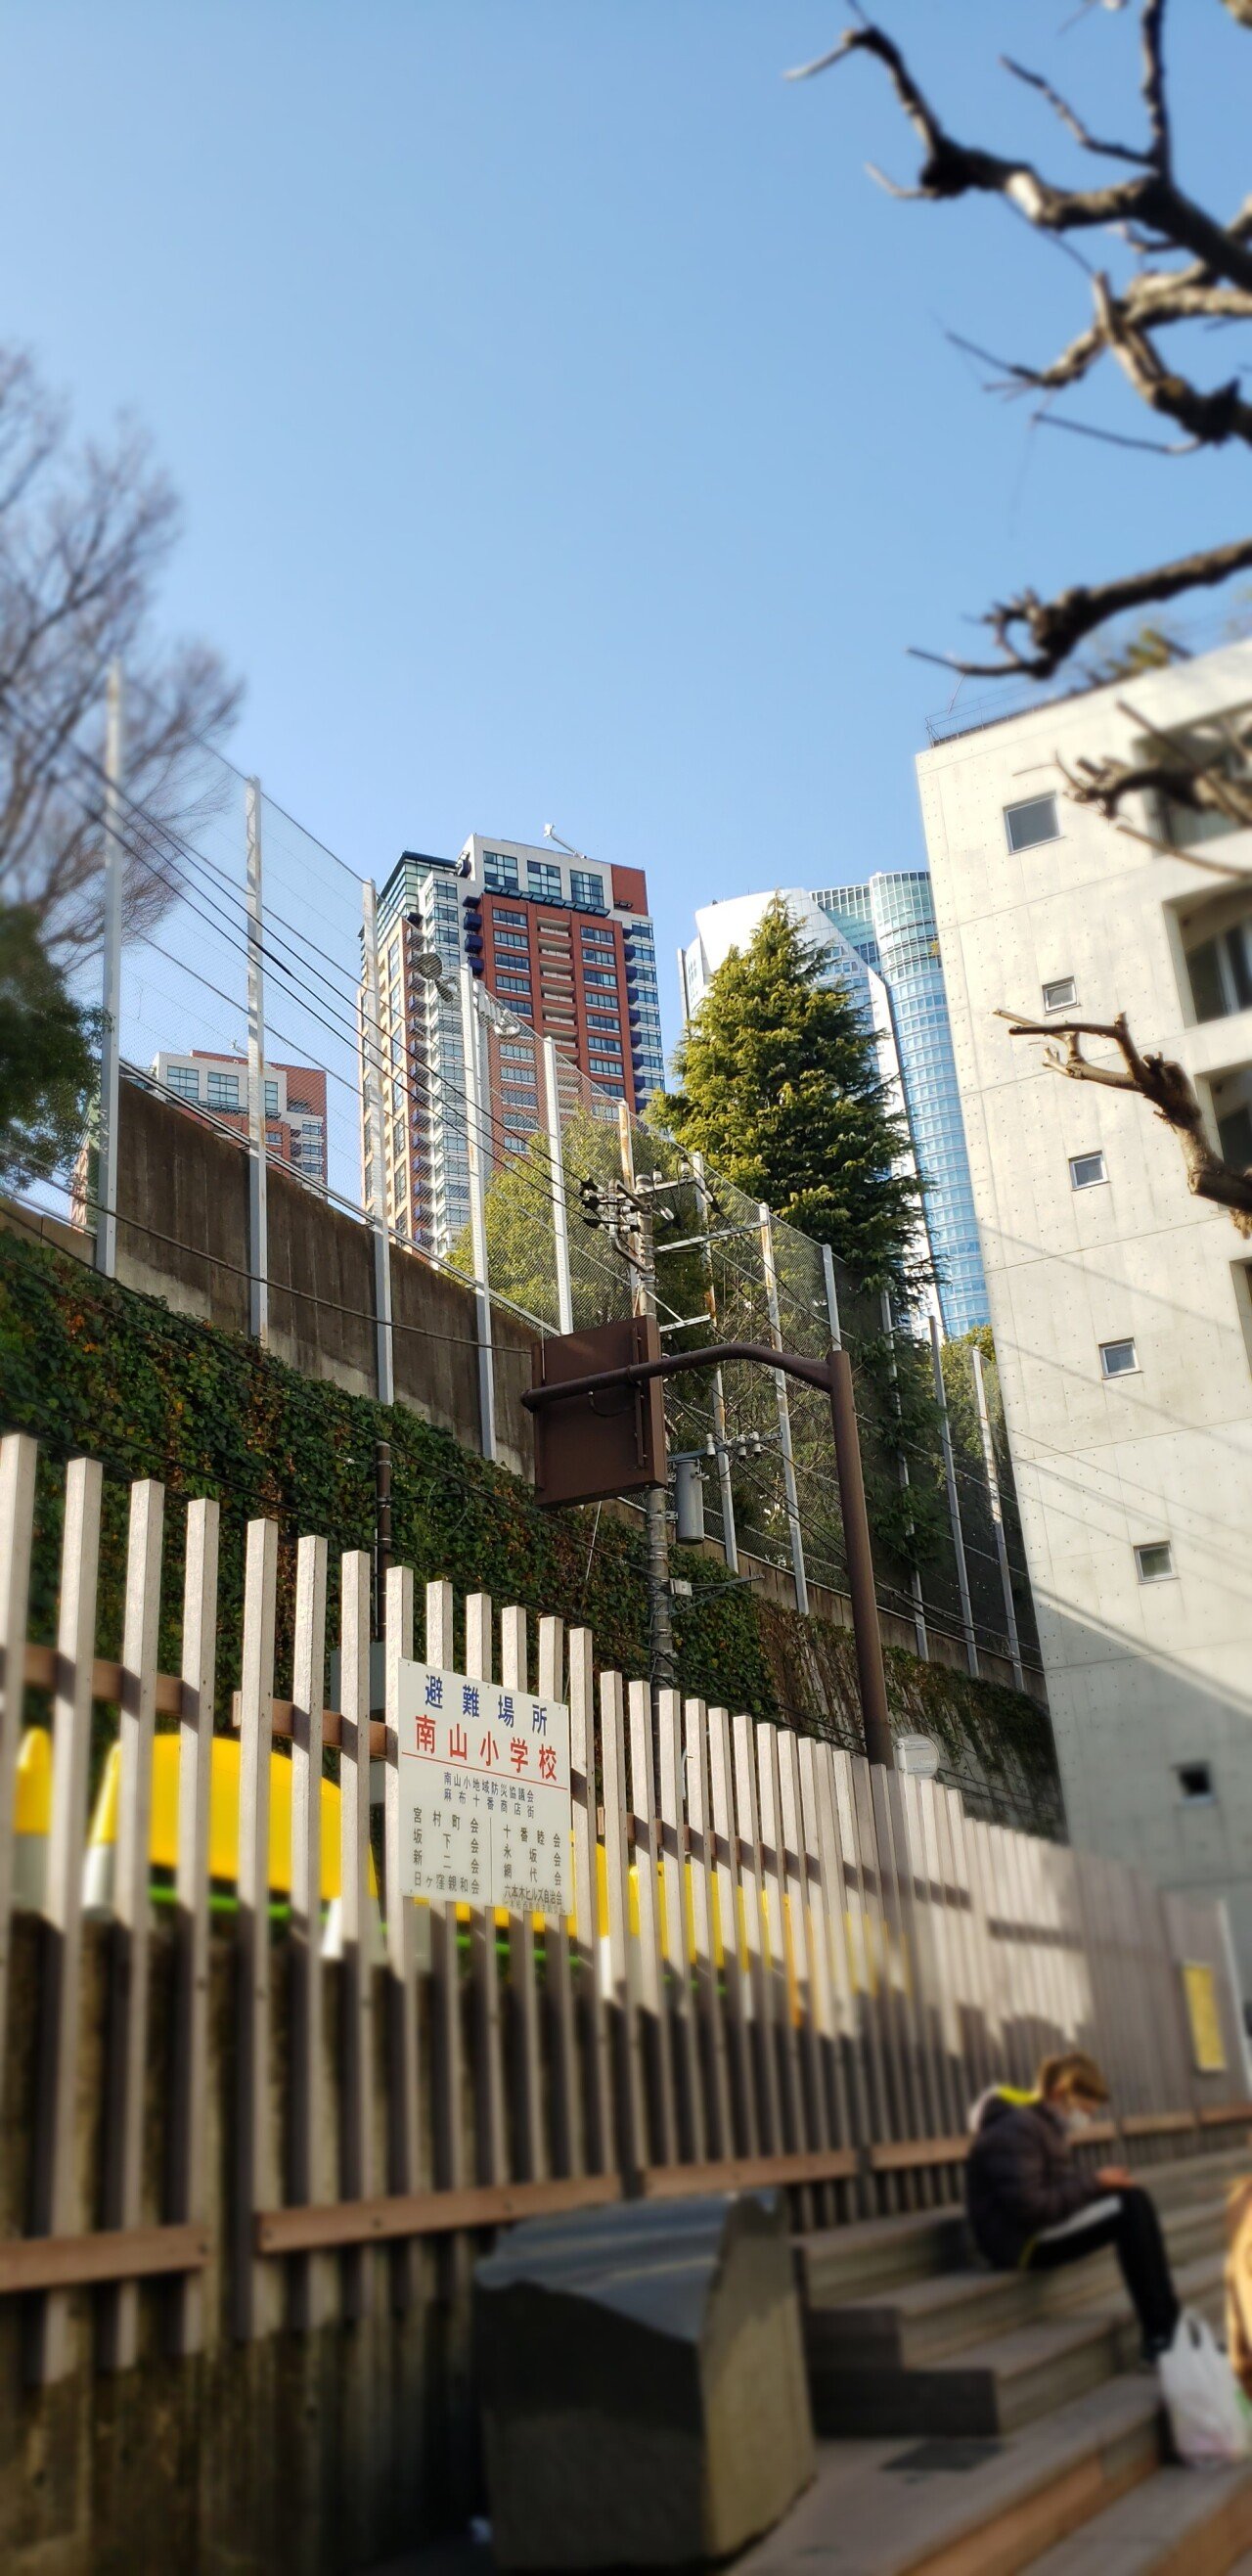 20210227_141421.jpg <도쿄 외노자> 봄날 기운 물씬 느껴지는 도쿄 길거리 풍경.jpg